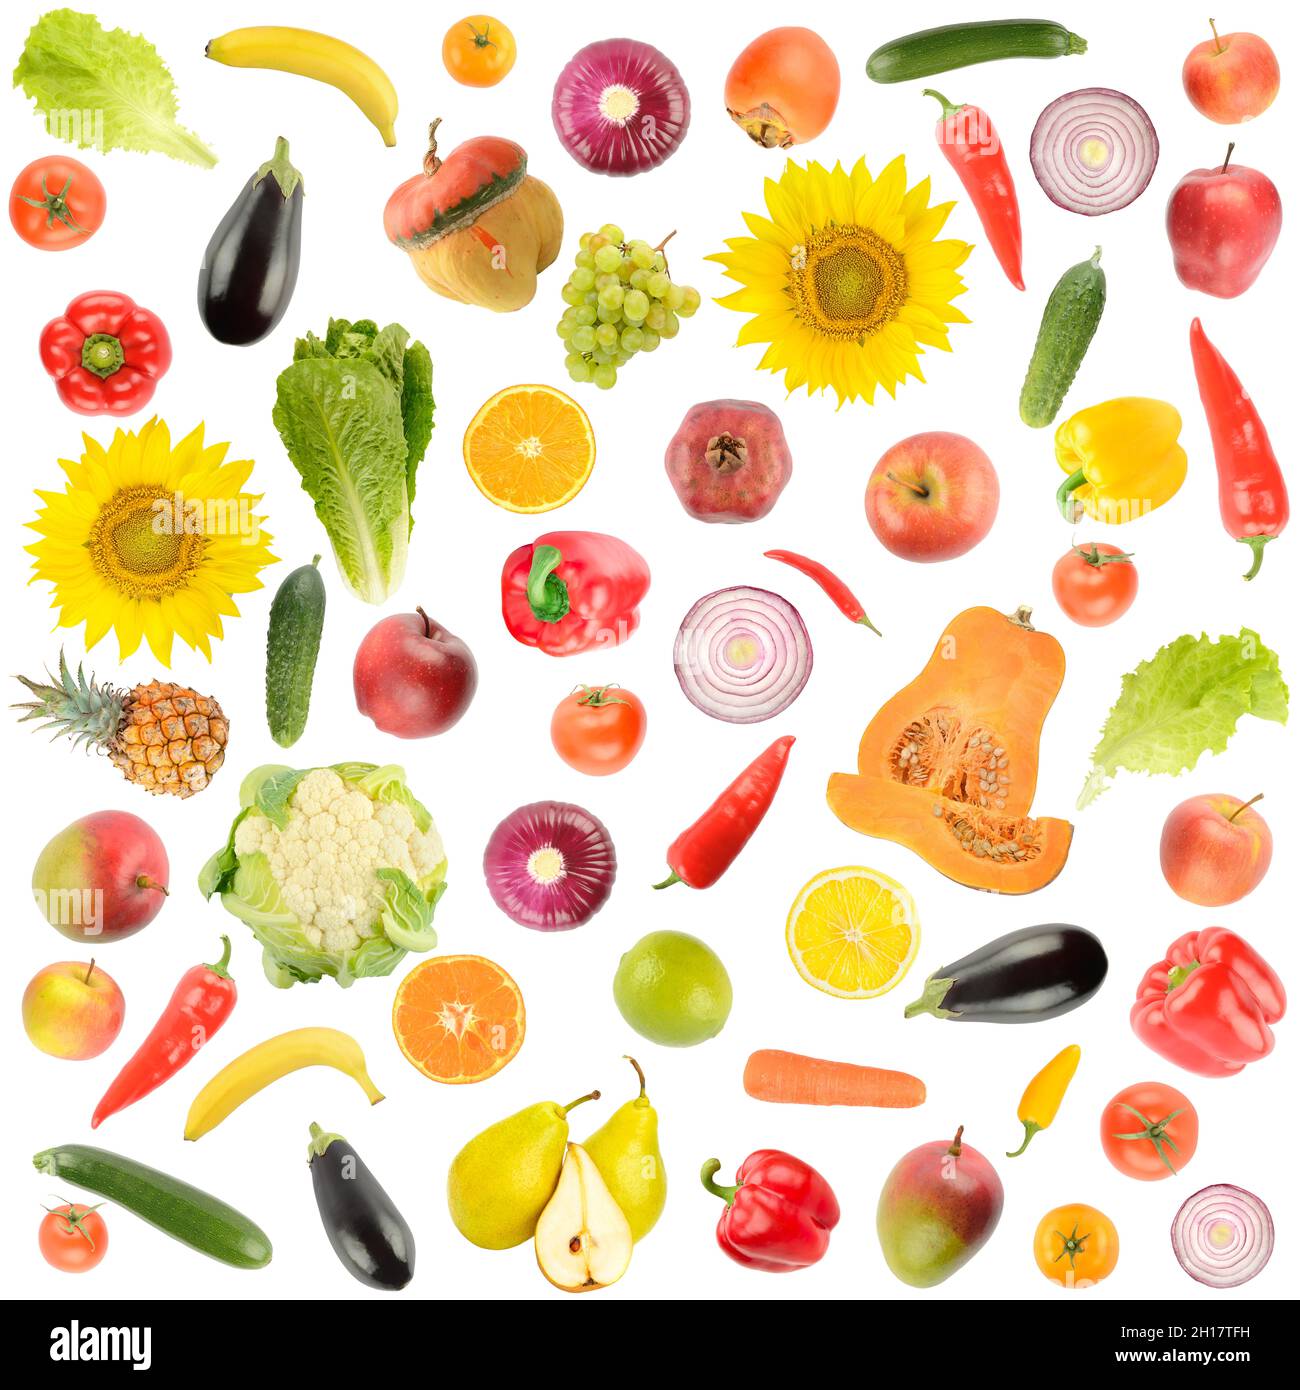 Grand ensemble carré de légumes et de fruits isolés sur fond blanc. Banque D'Images